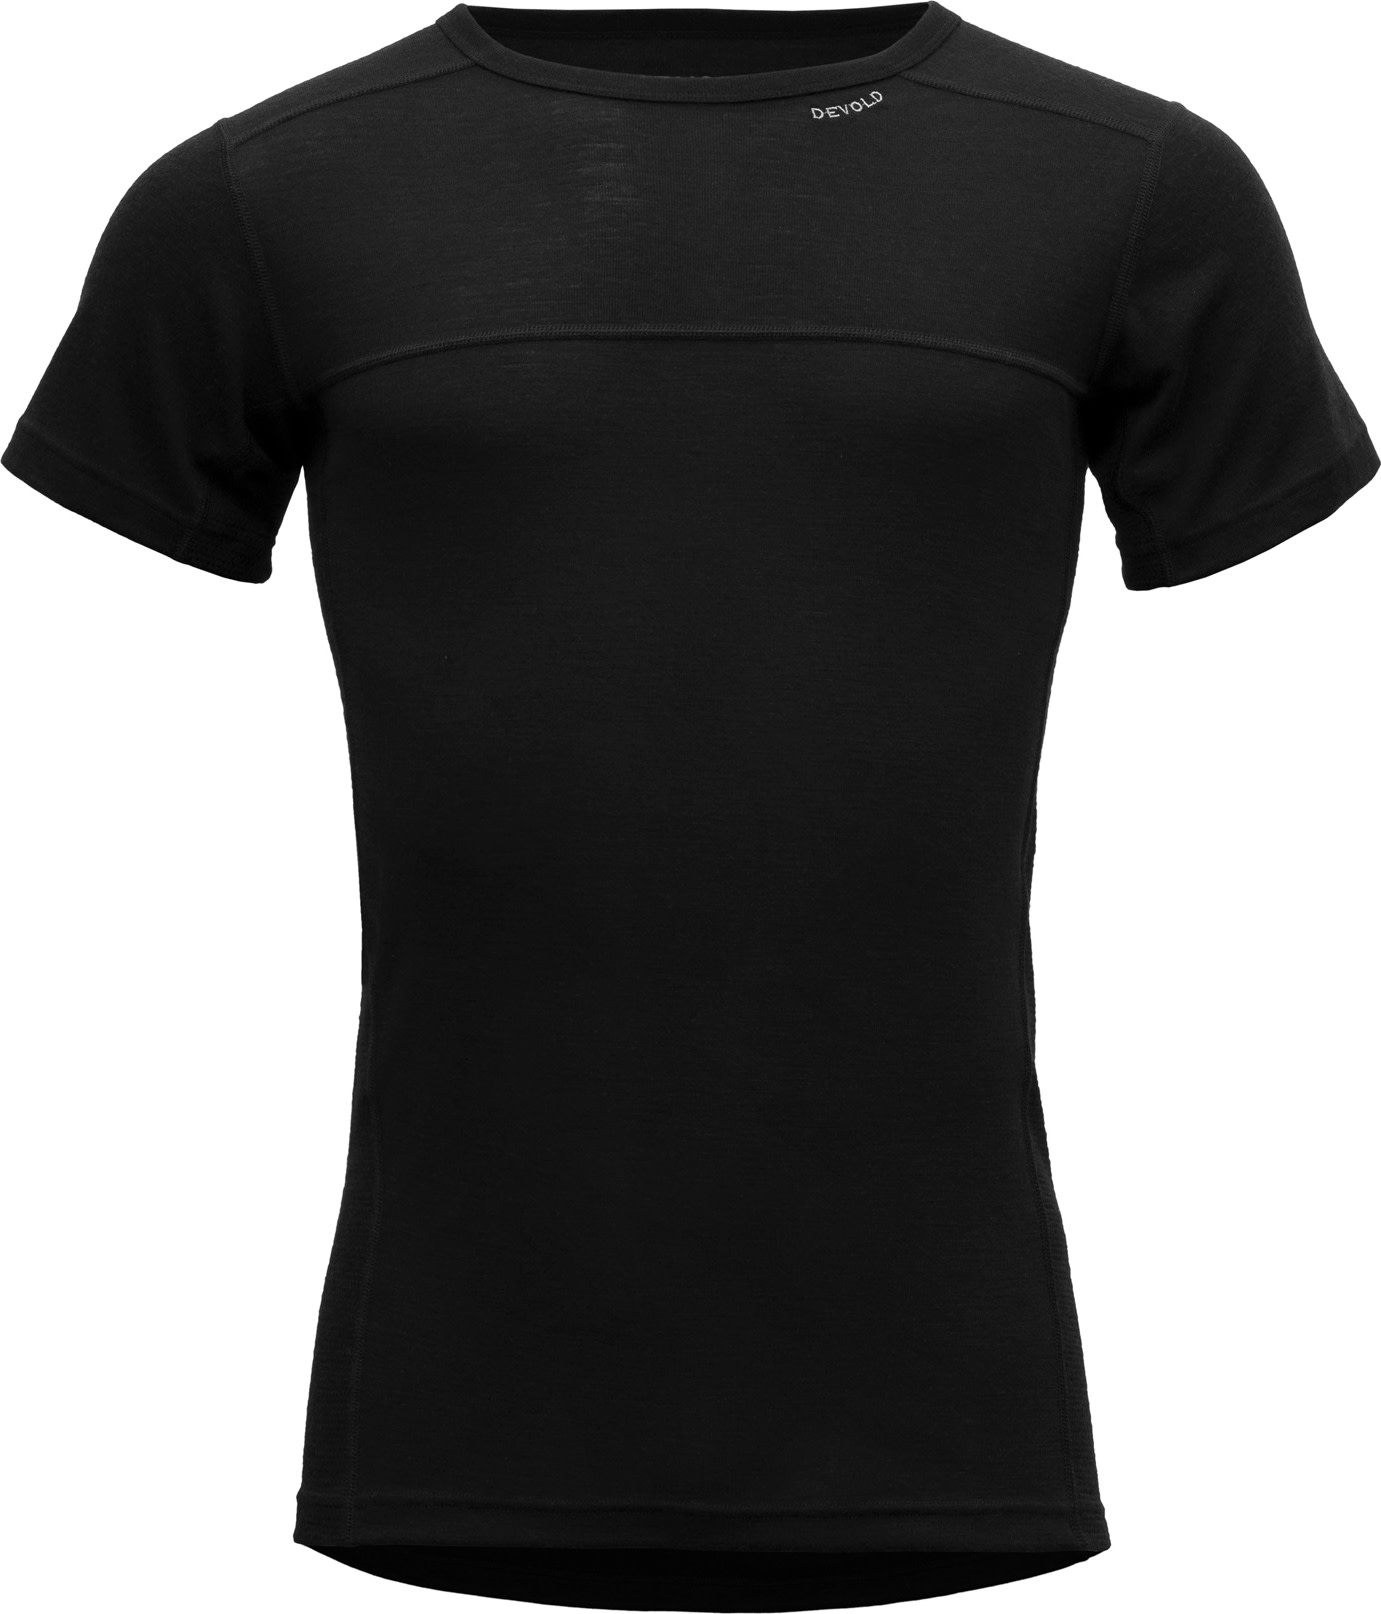 Devold Men’s Lauparen Merino 190 T-Shirt BLACK